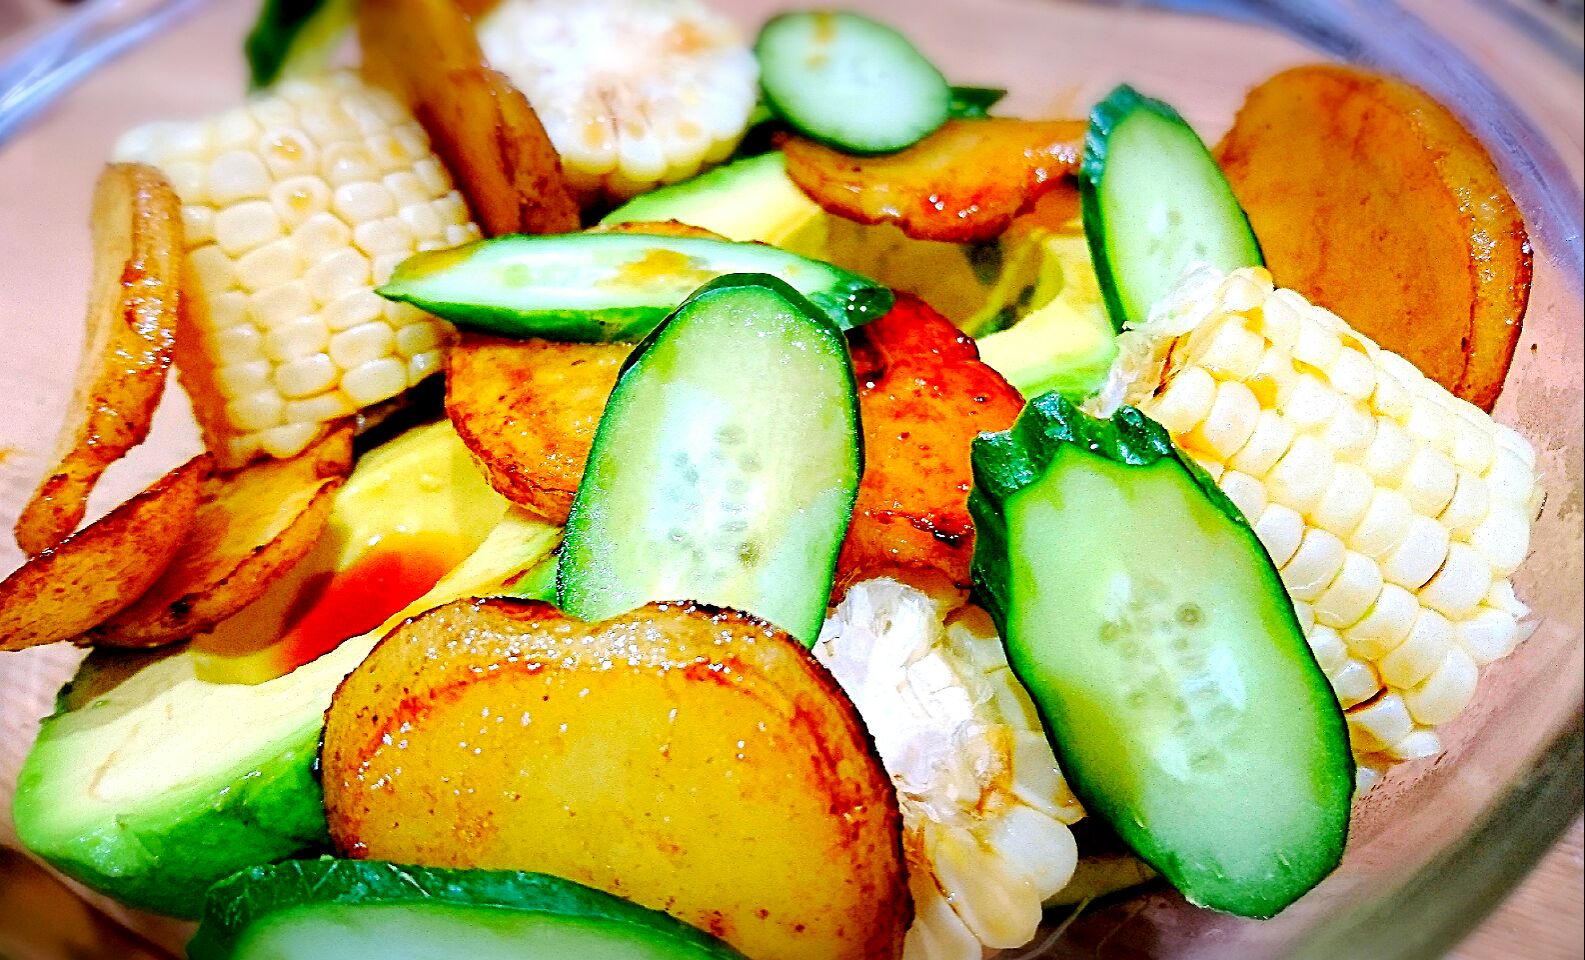 野菜生活～ジャガイモとホワイトコーン、ジャンボアボカドのサラダ?